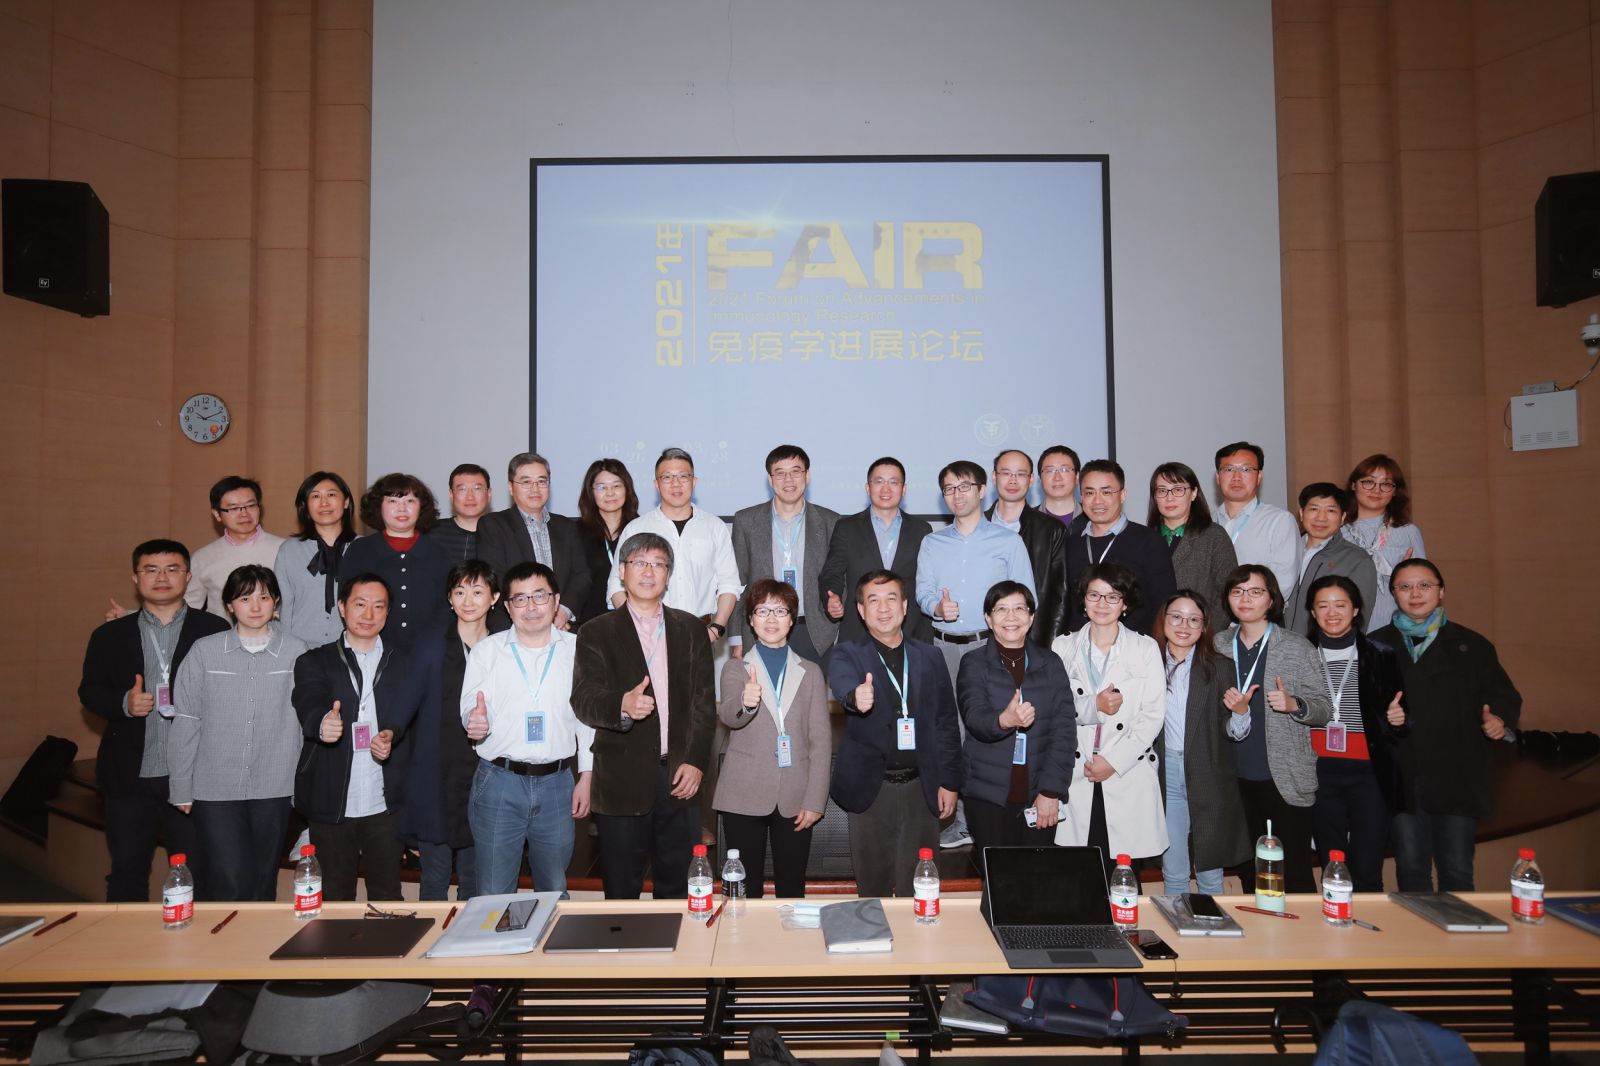 上海市免疫学研究所-清华大学免疫学研究所第六届FAIR会议成功召开